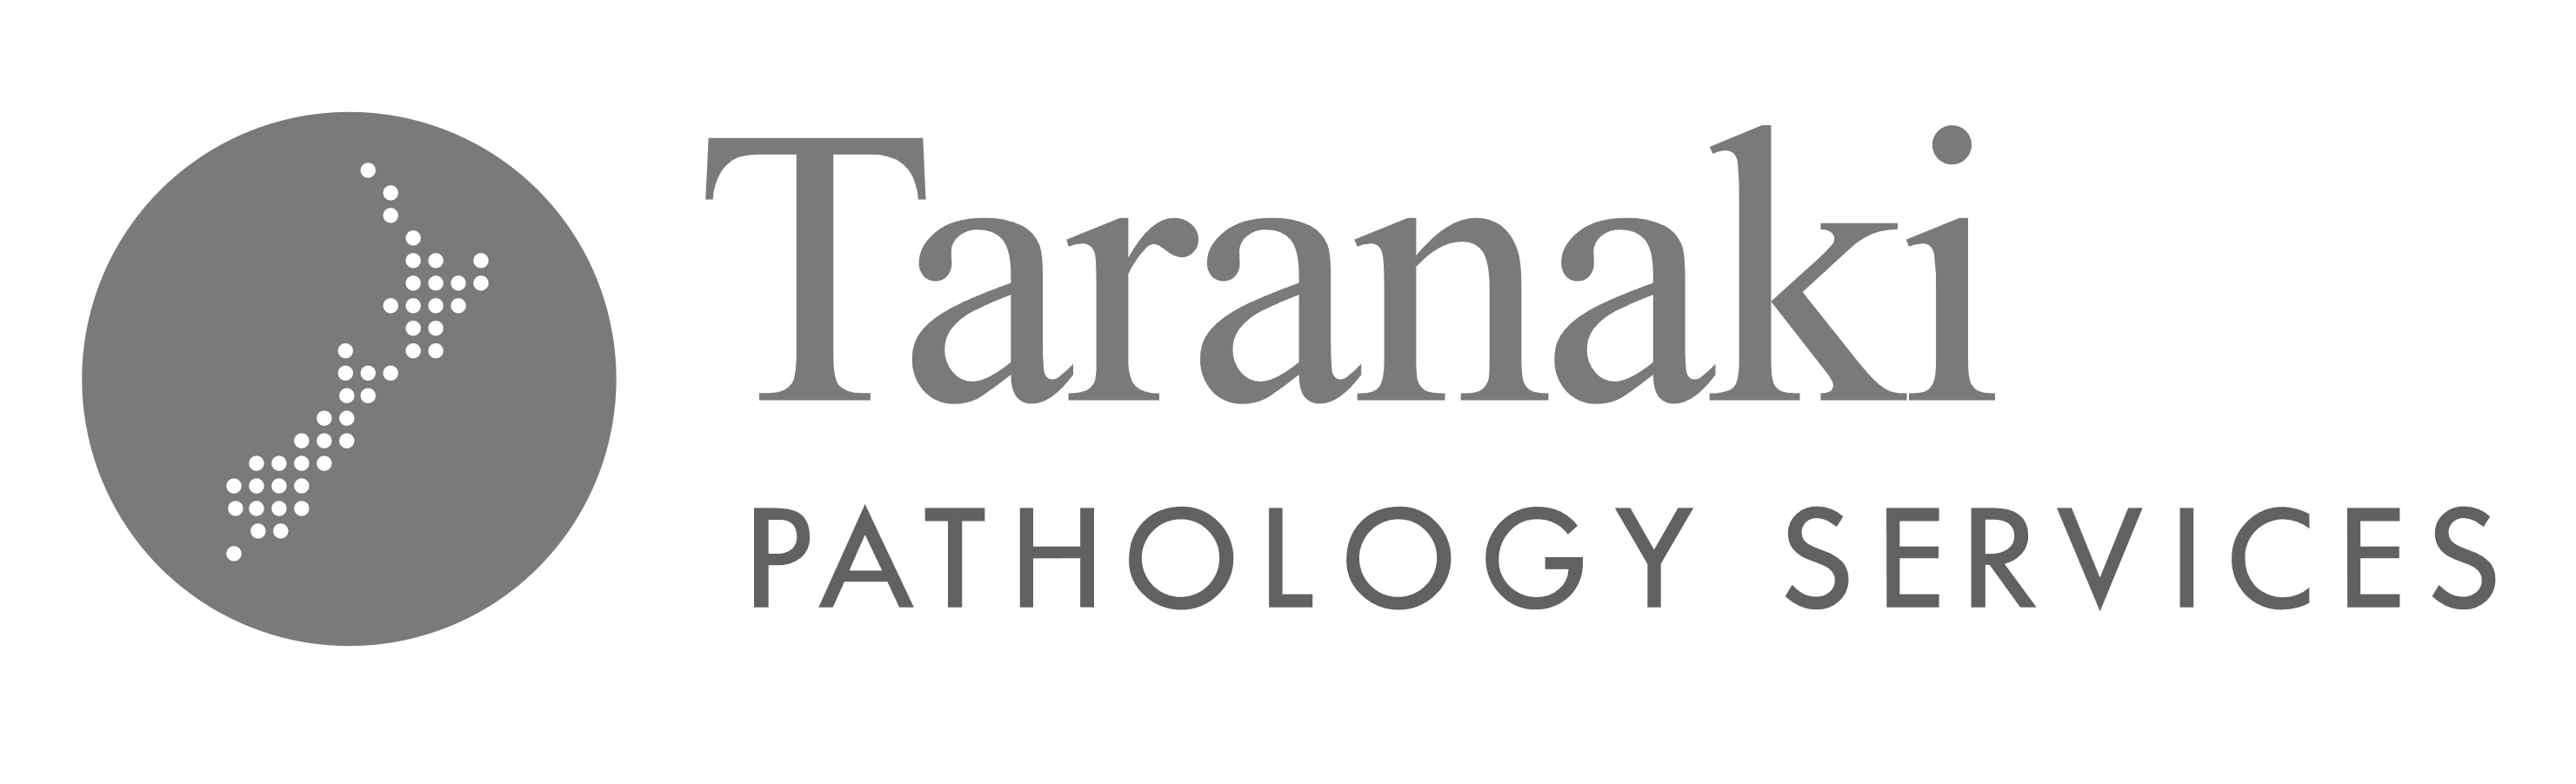 i-screen-taranaki-pathology-services